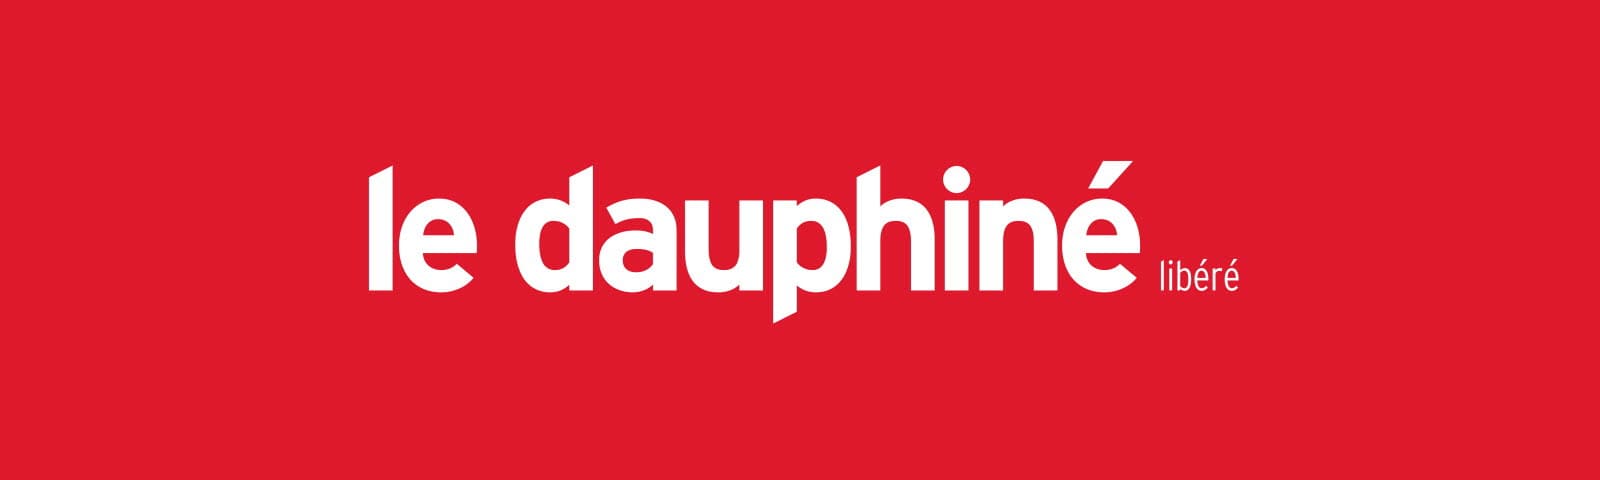 logo dauphiné libéré parution rendement locatif